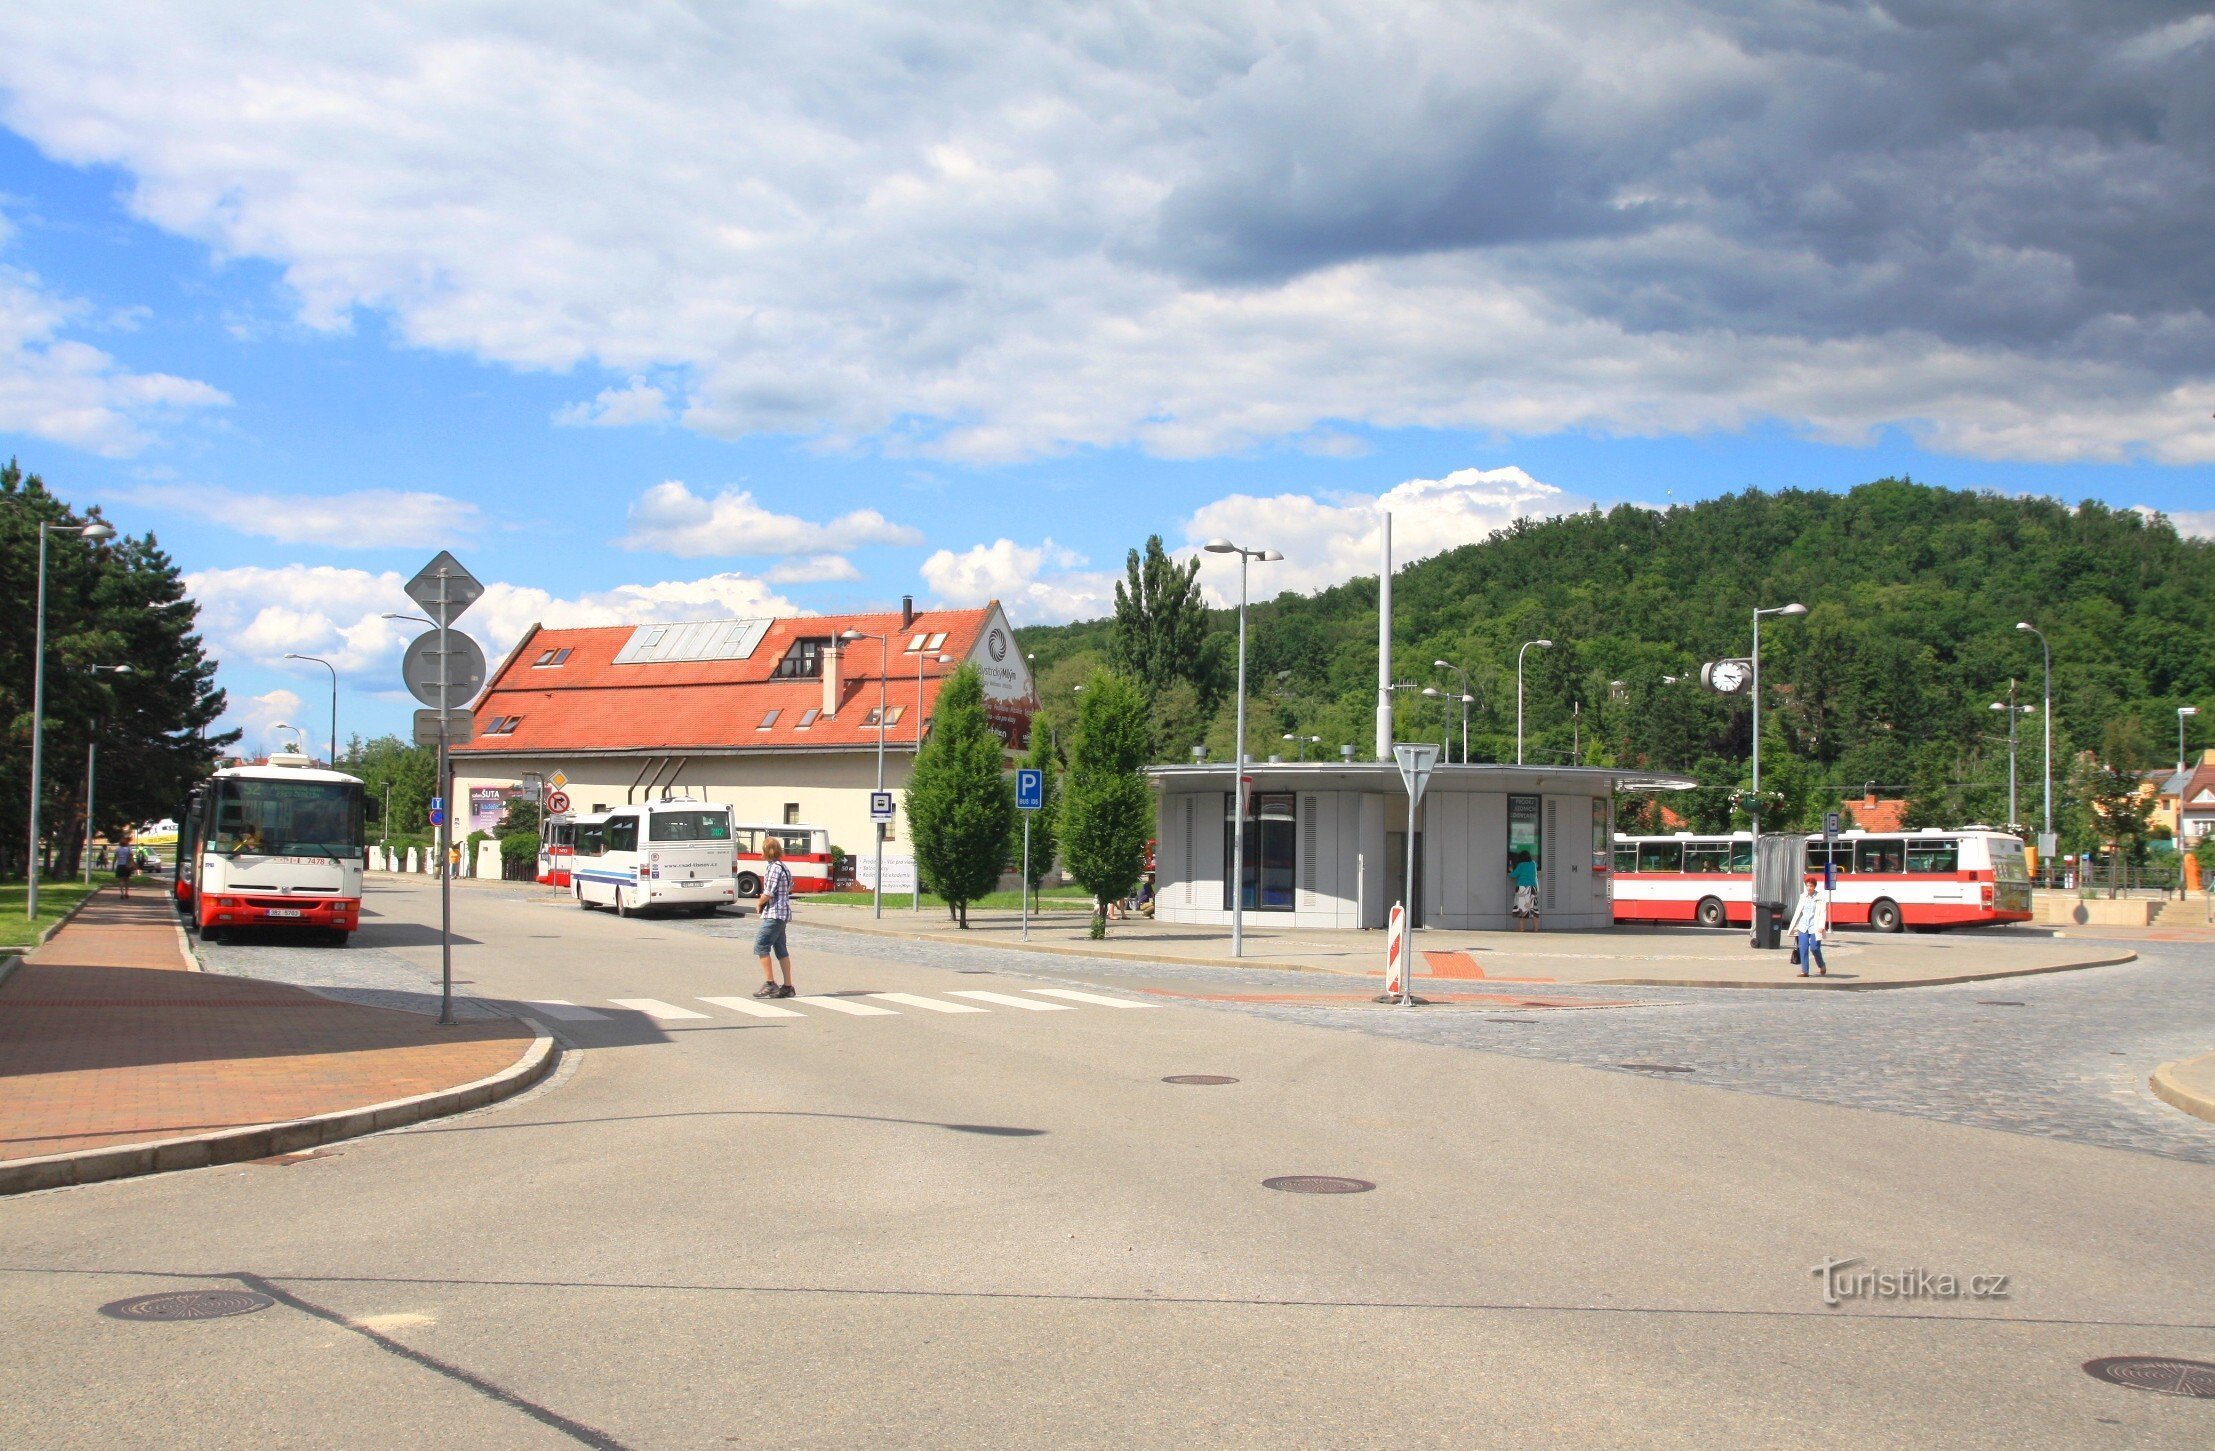 Közlekedési terminál Brno-Bystrecben